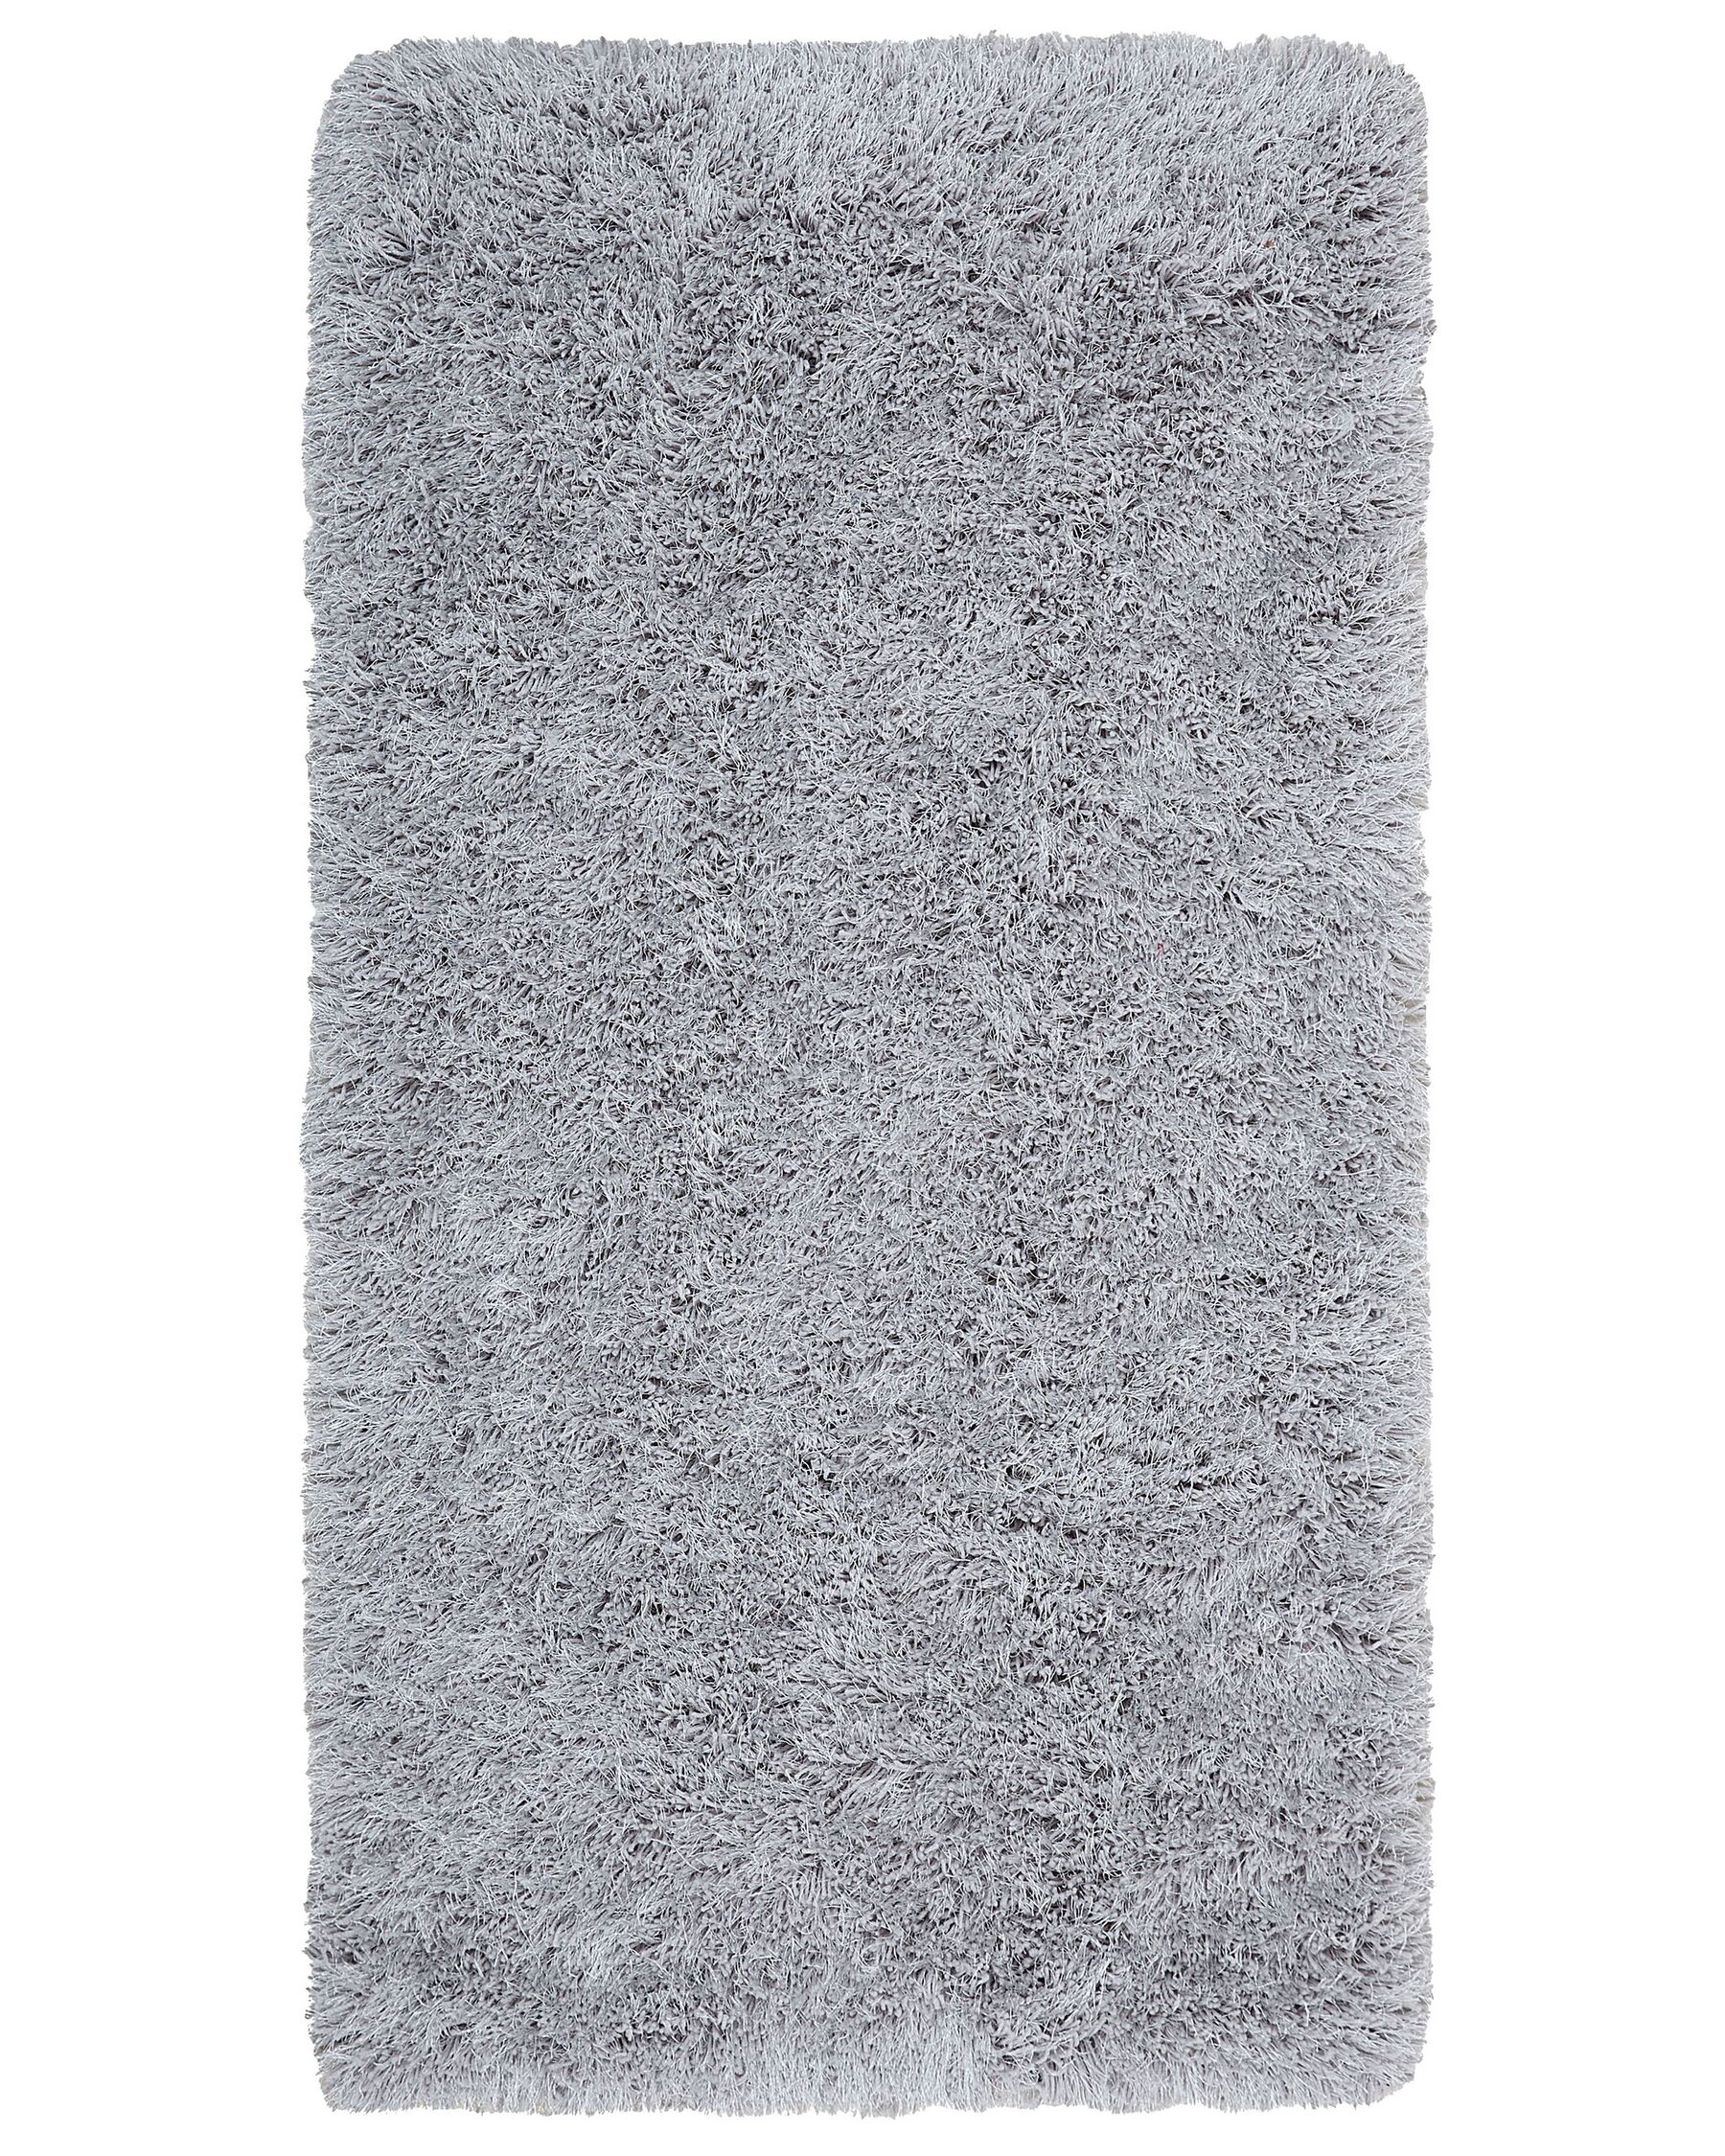 Tappeto shaggy rettangolare grigio chiaro 80 x 150 cm CIDE_746768